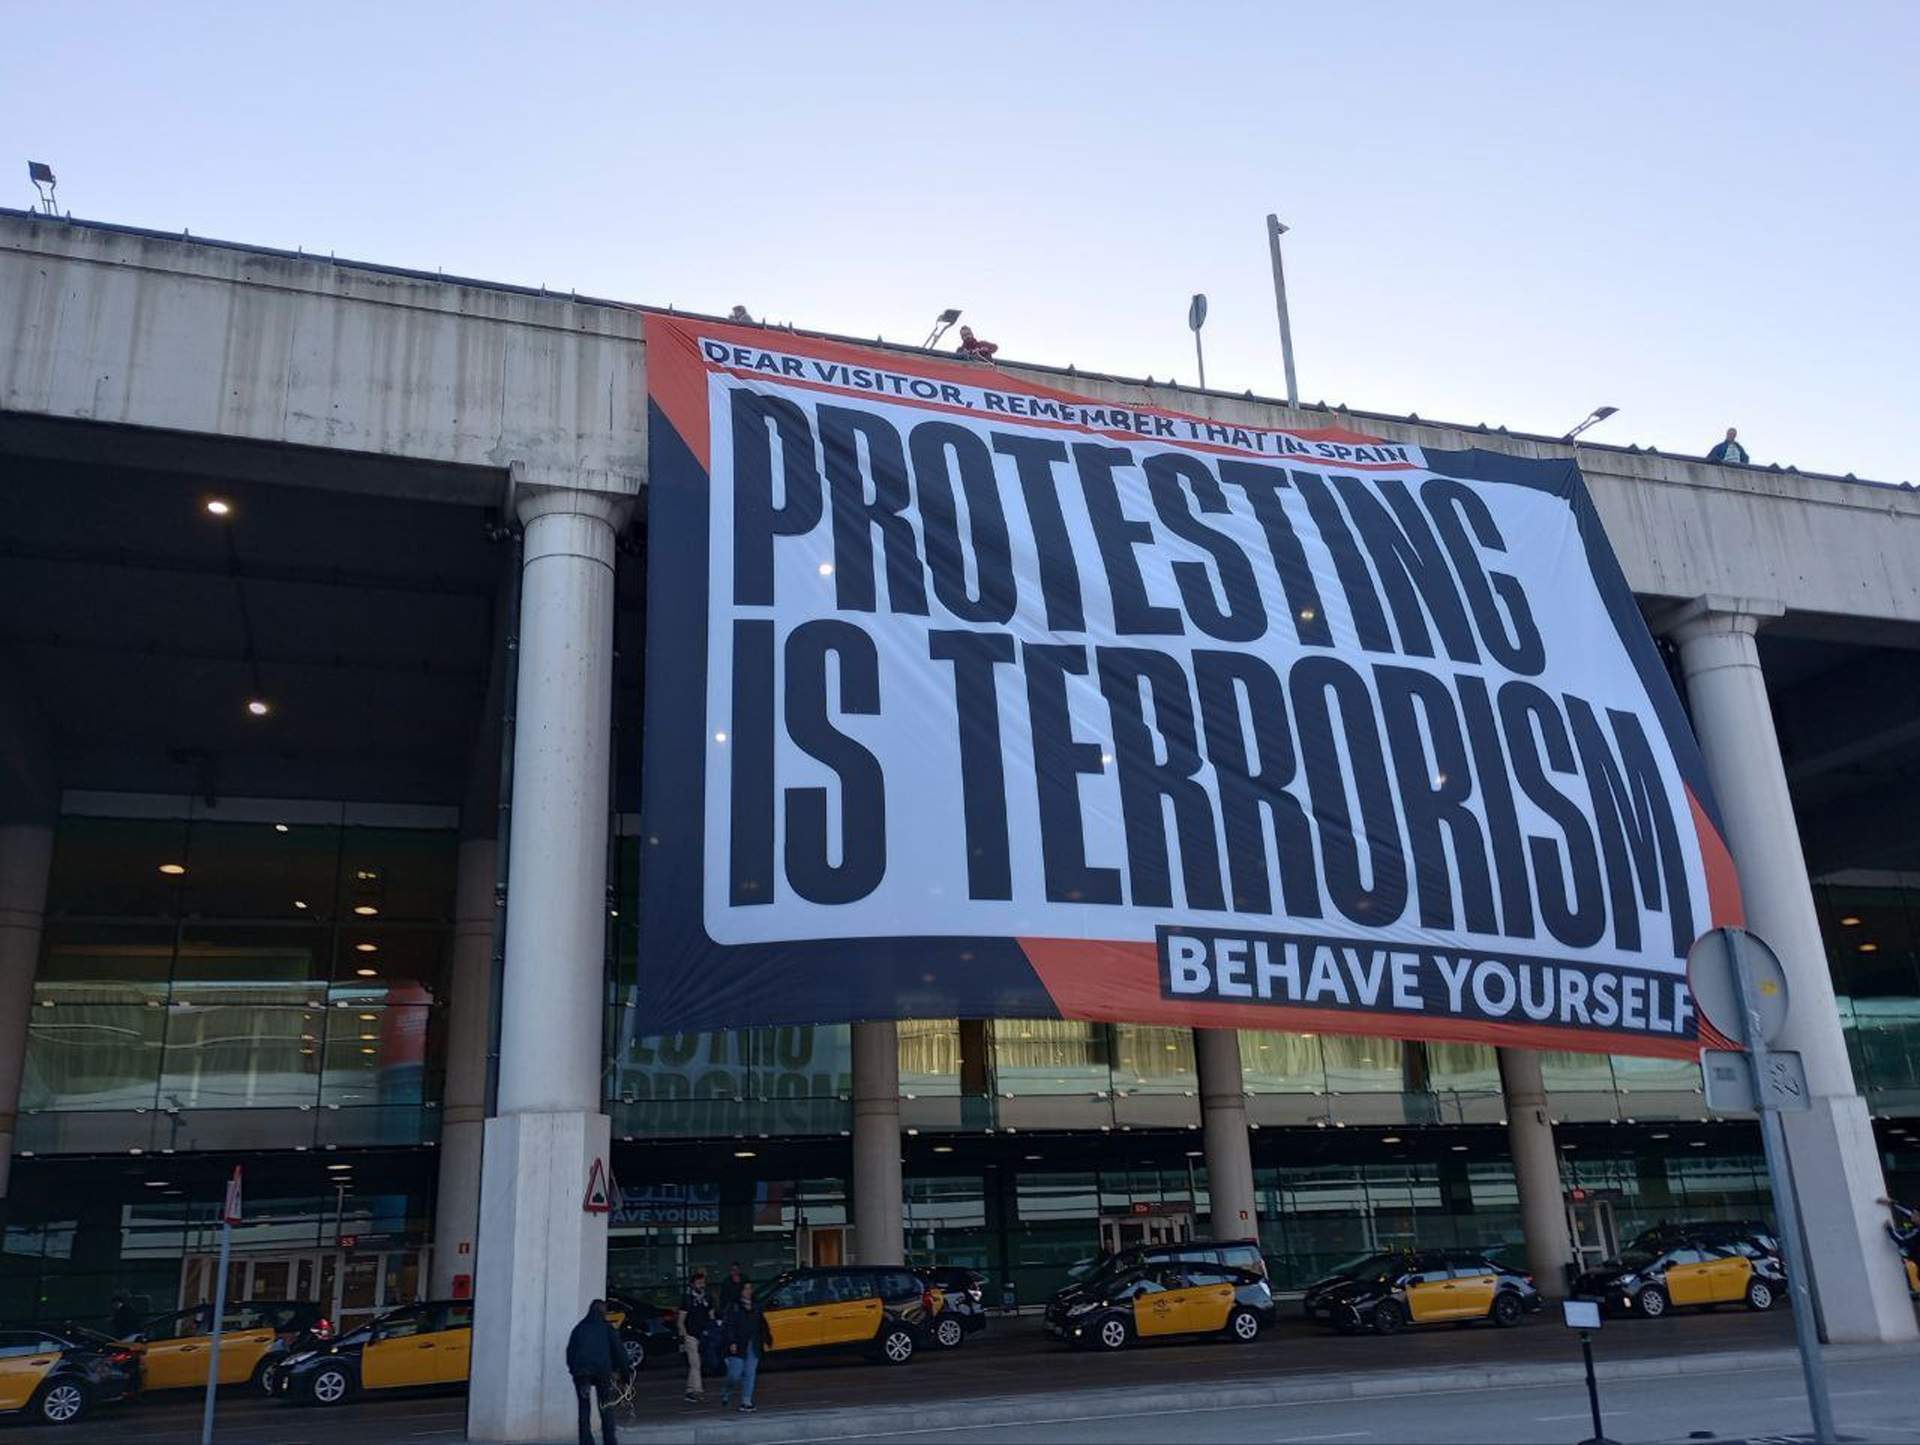 Pancarta gigante de Òmnium en el aeropuerto de El Prat: "En España, protestar es terrorismo"